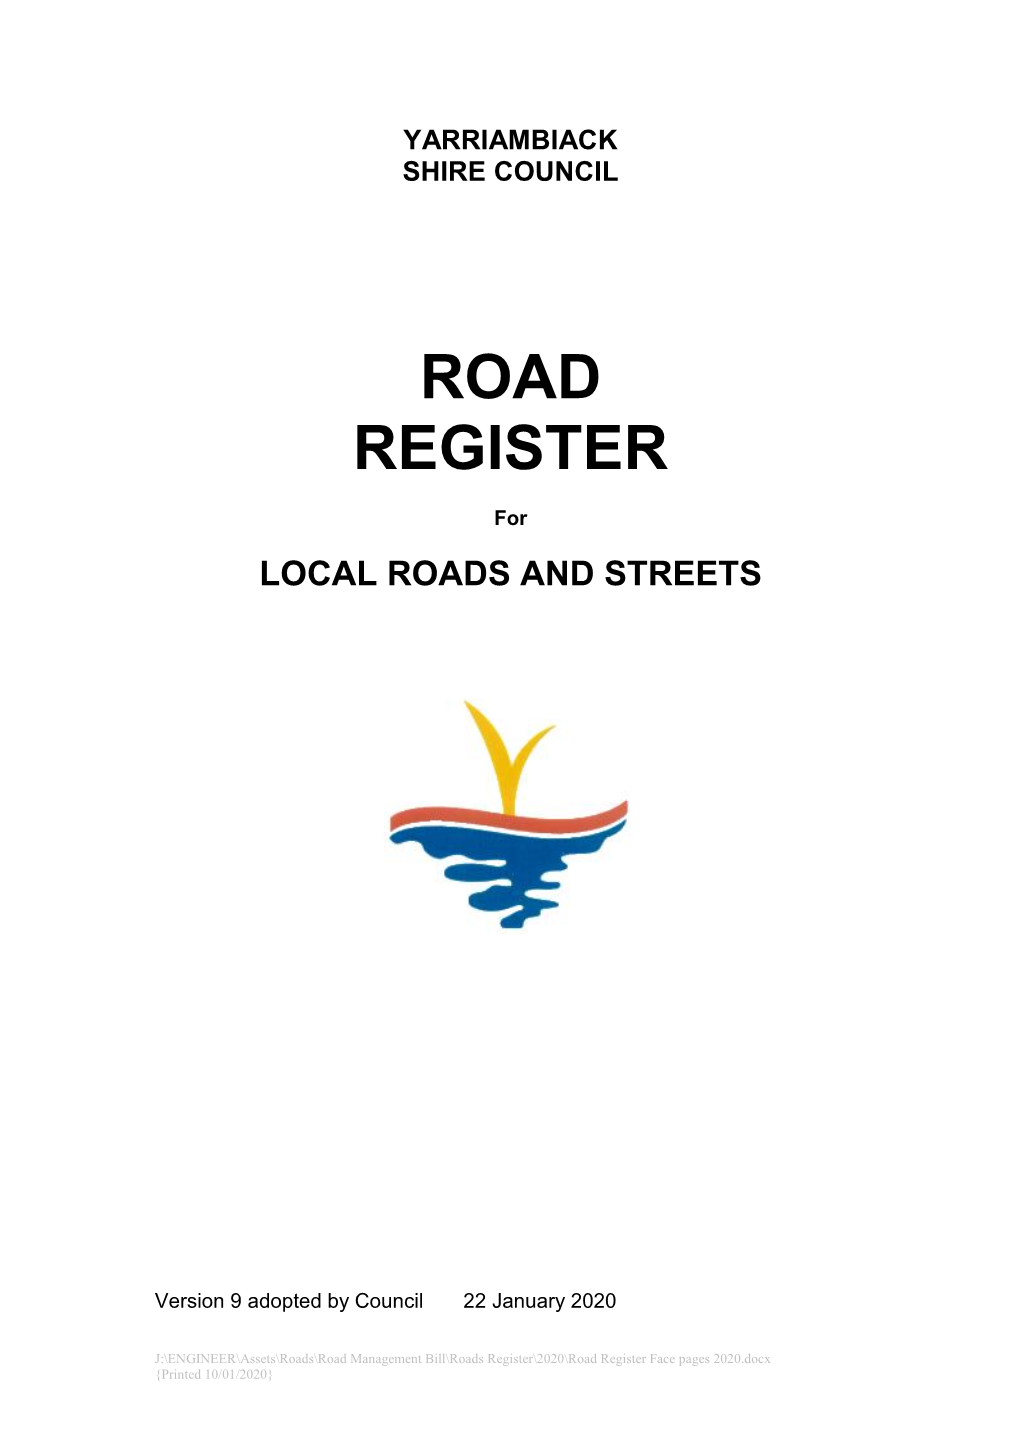 YSC Road Register Jan 2020